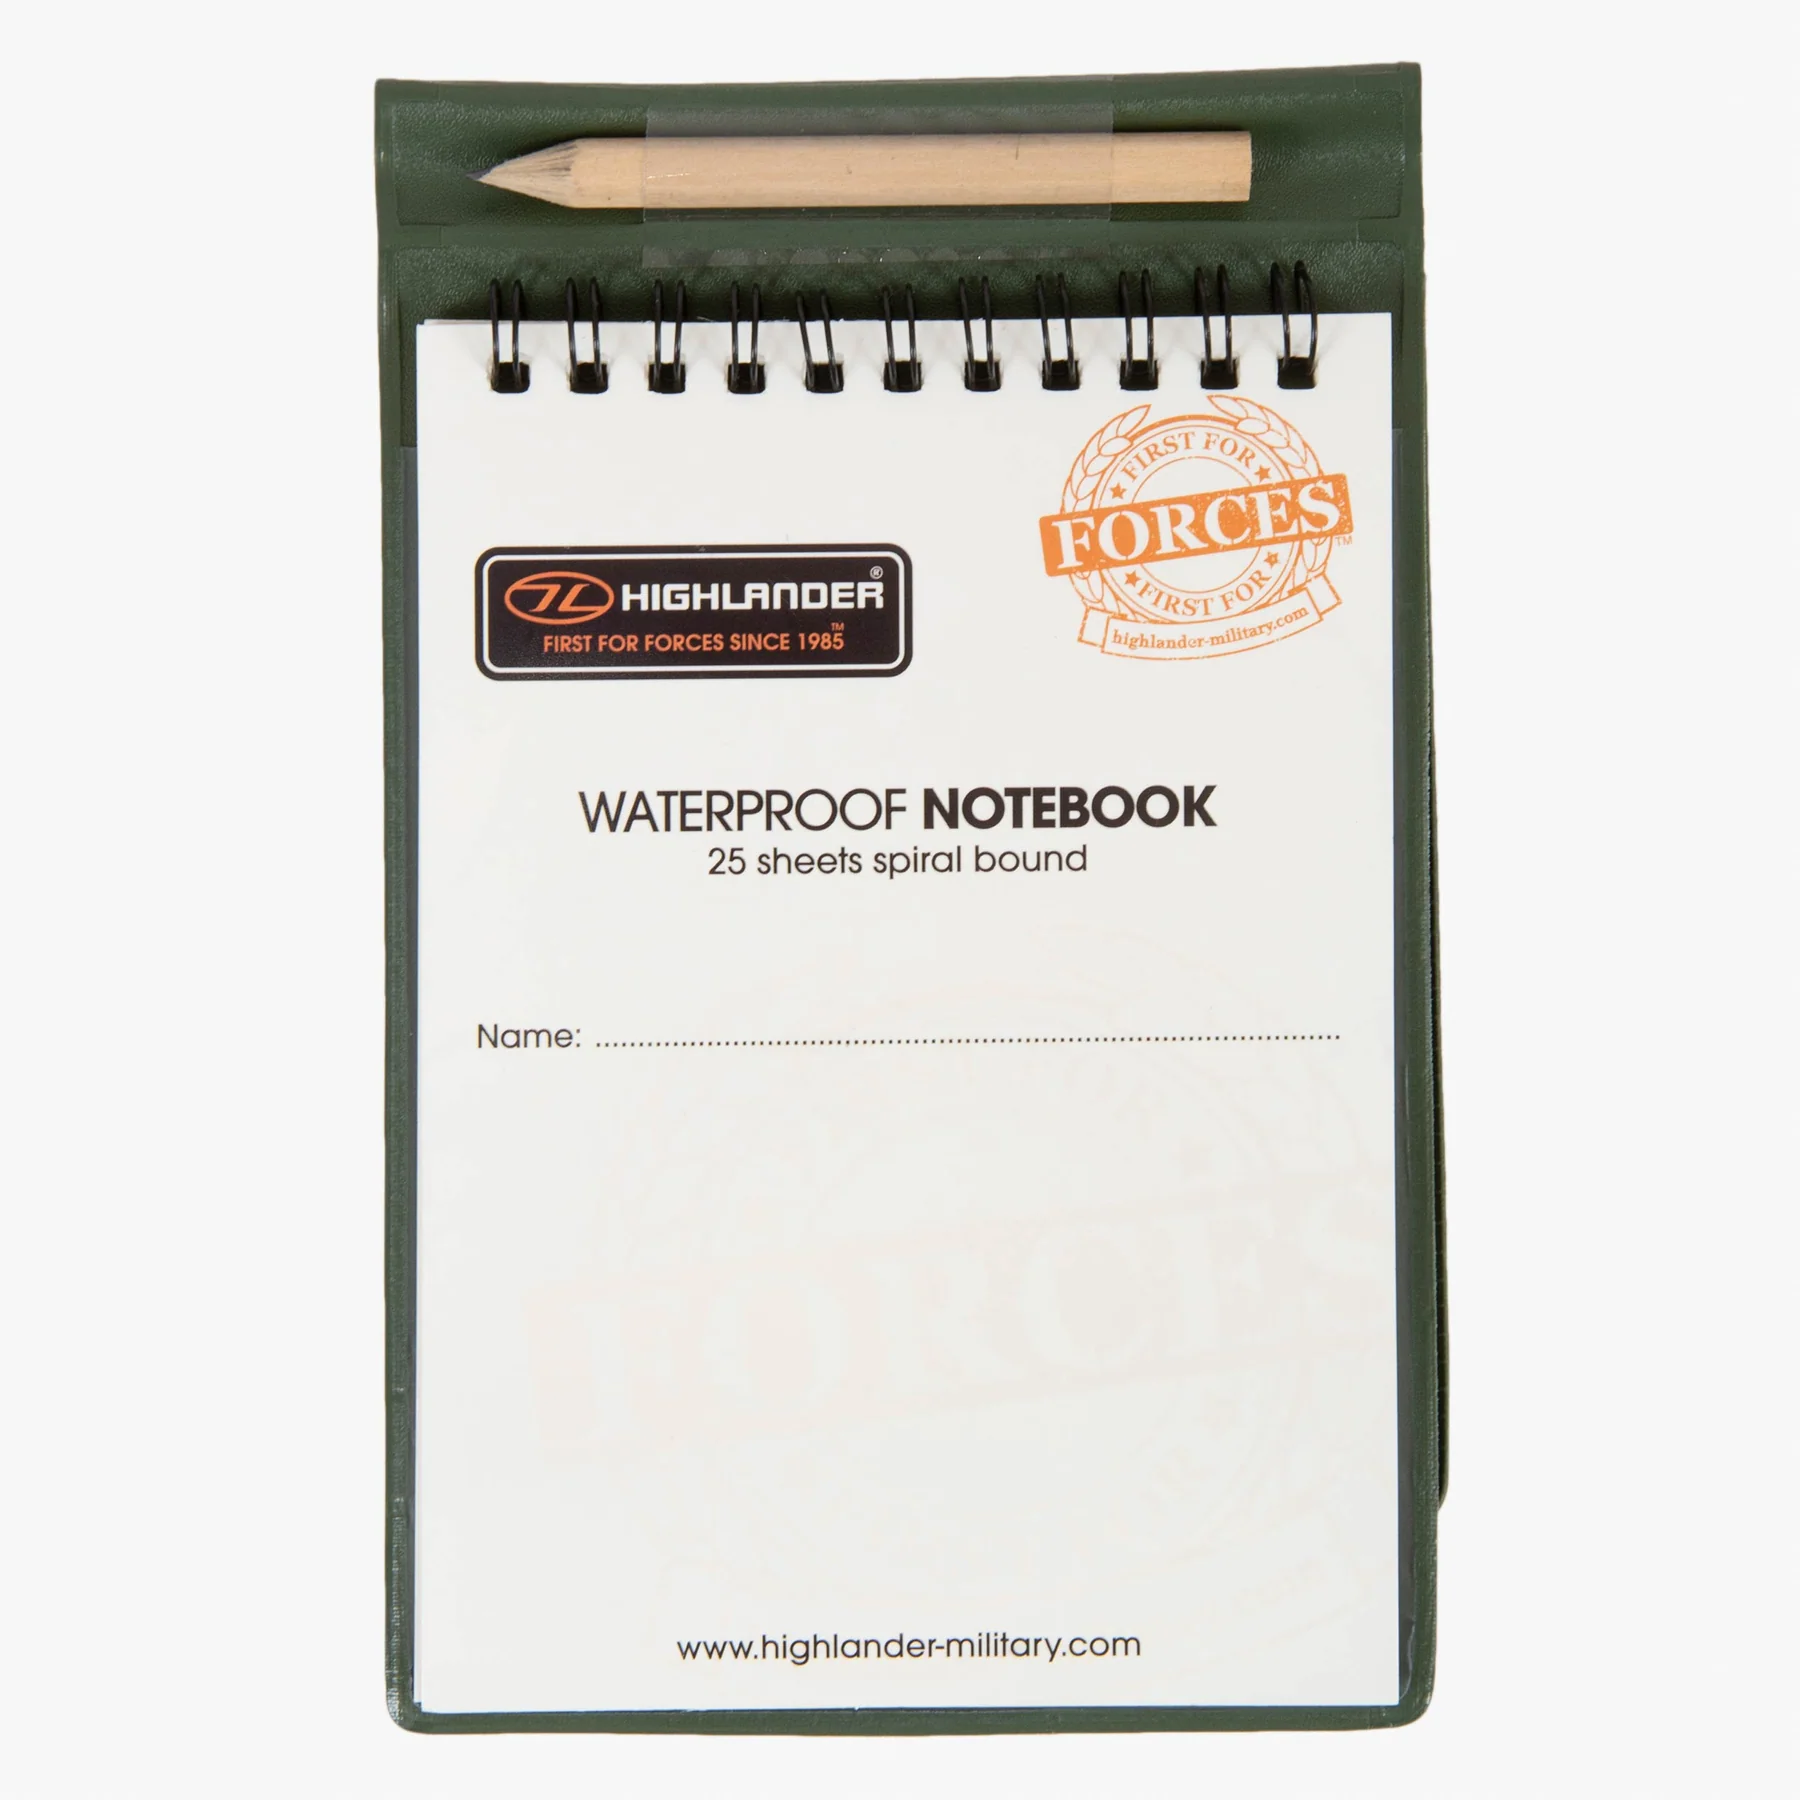 Highlander Forces Waterproof Notebook 15cmx10.5cm